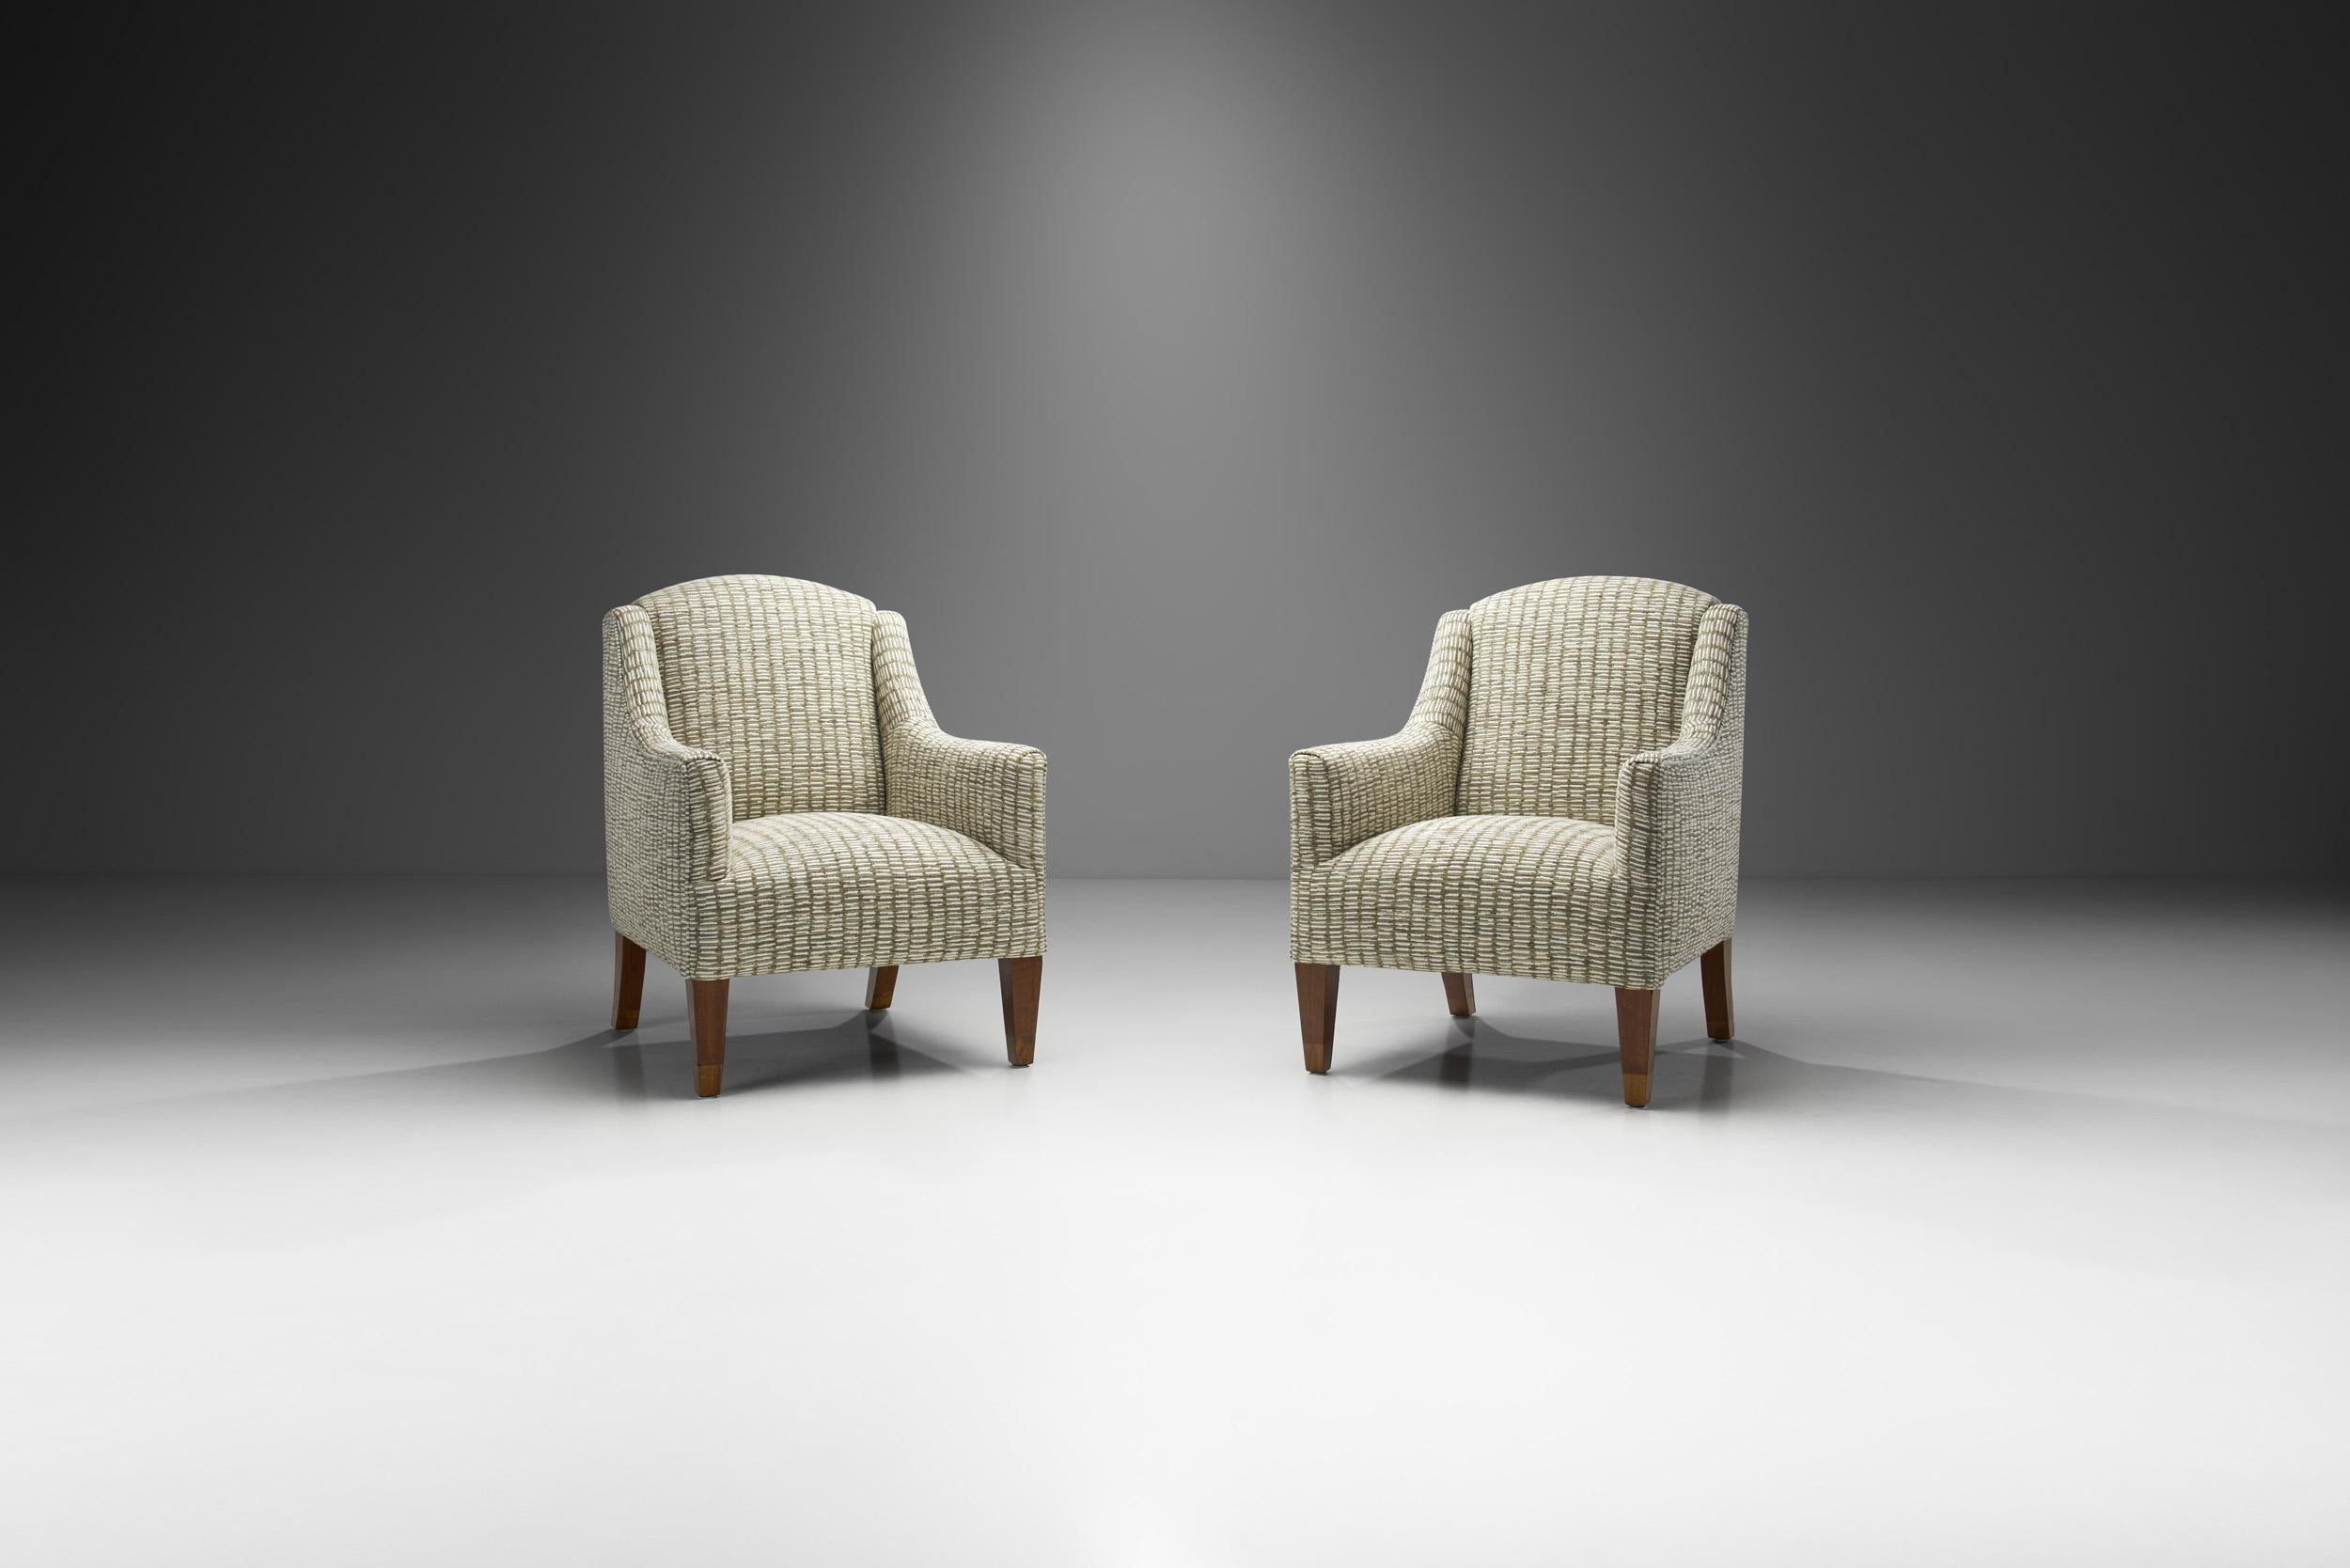 Dieses Paar Sessel aus dänischer Produktion zeichnet sich durch die besten Eigenschaften des dänischen Designs der Jahrhundertmitte aus. Von der zurückhaltenden Ästhetik bis hin zur eleganten Kombination von Materialien sind diese Stühle das